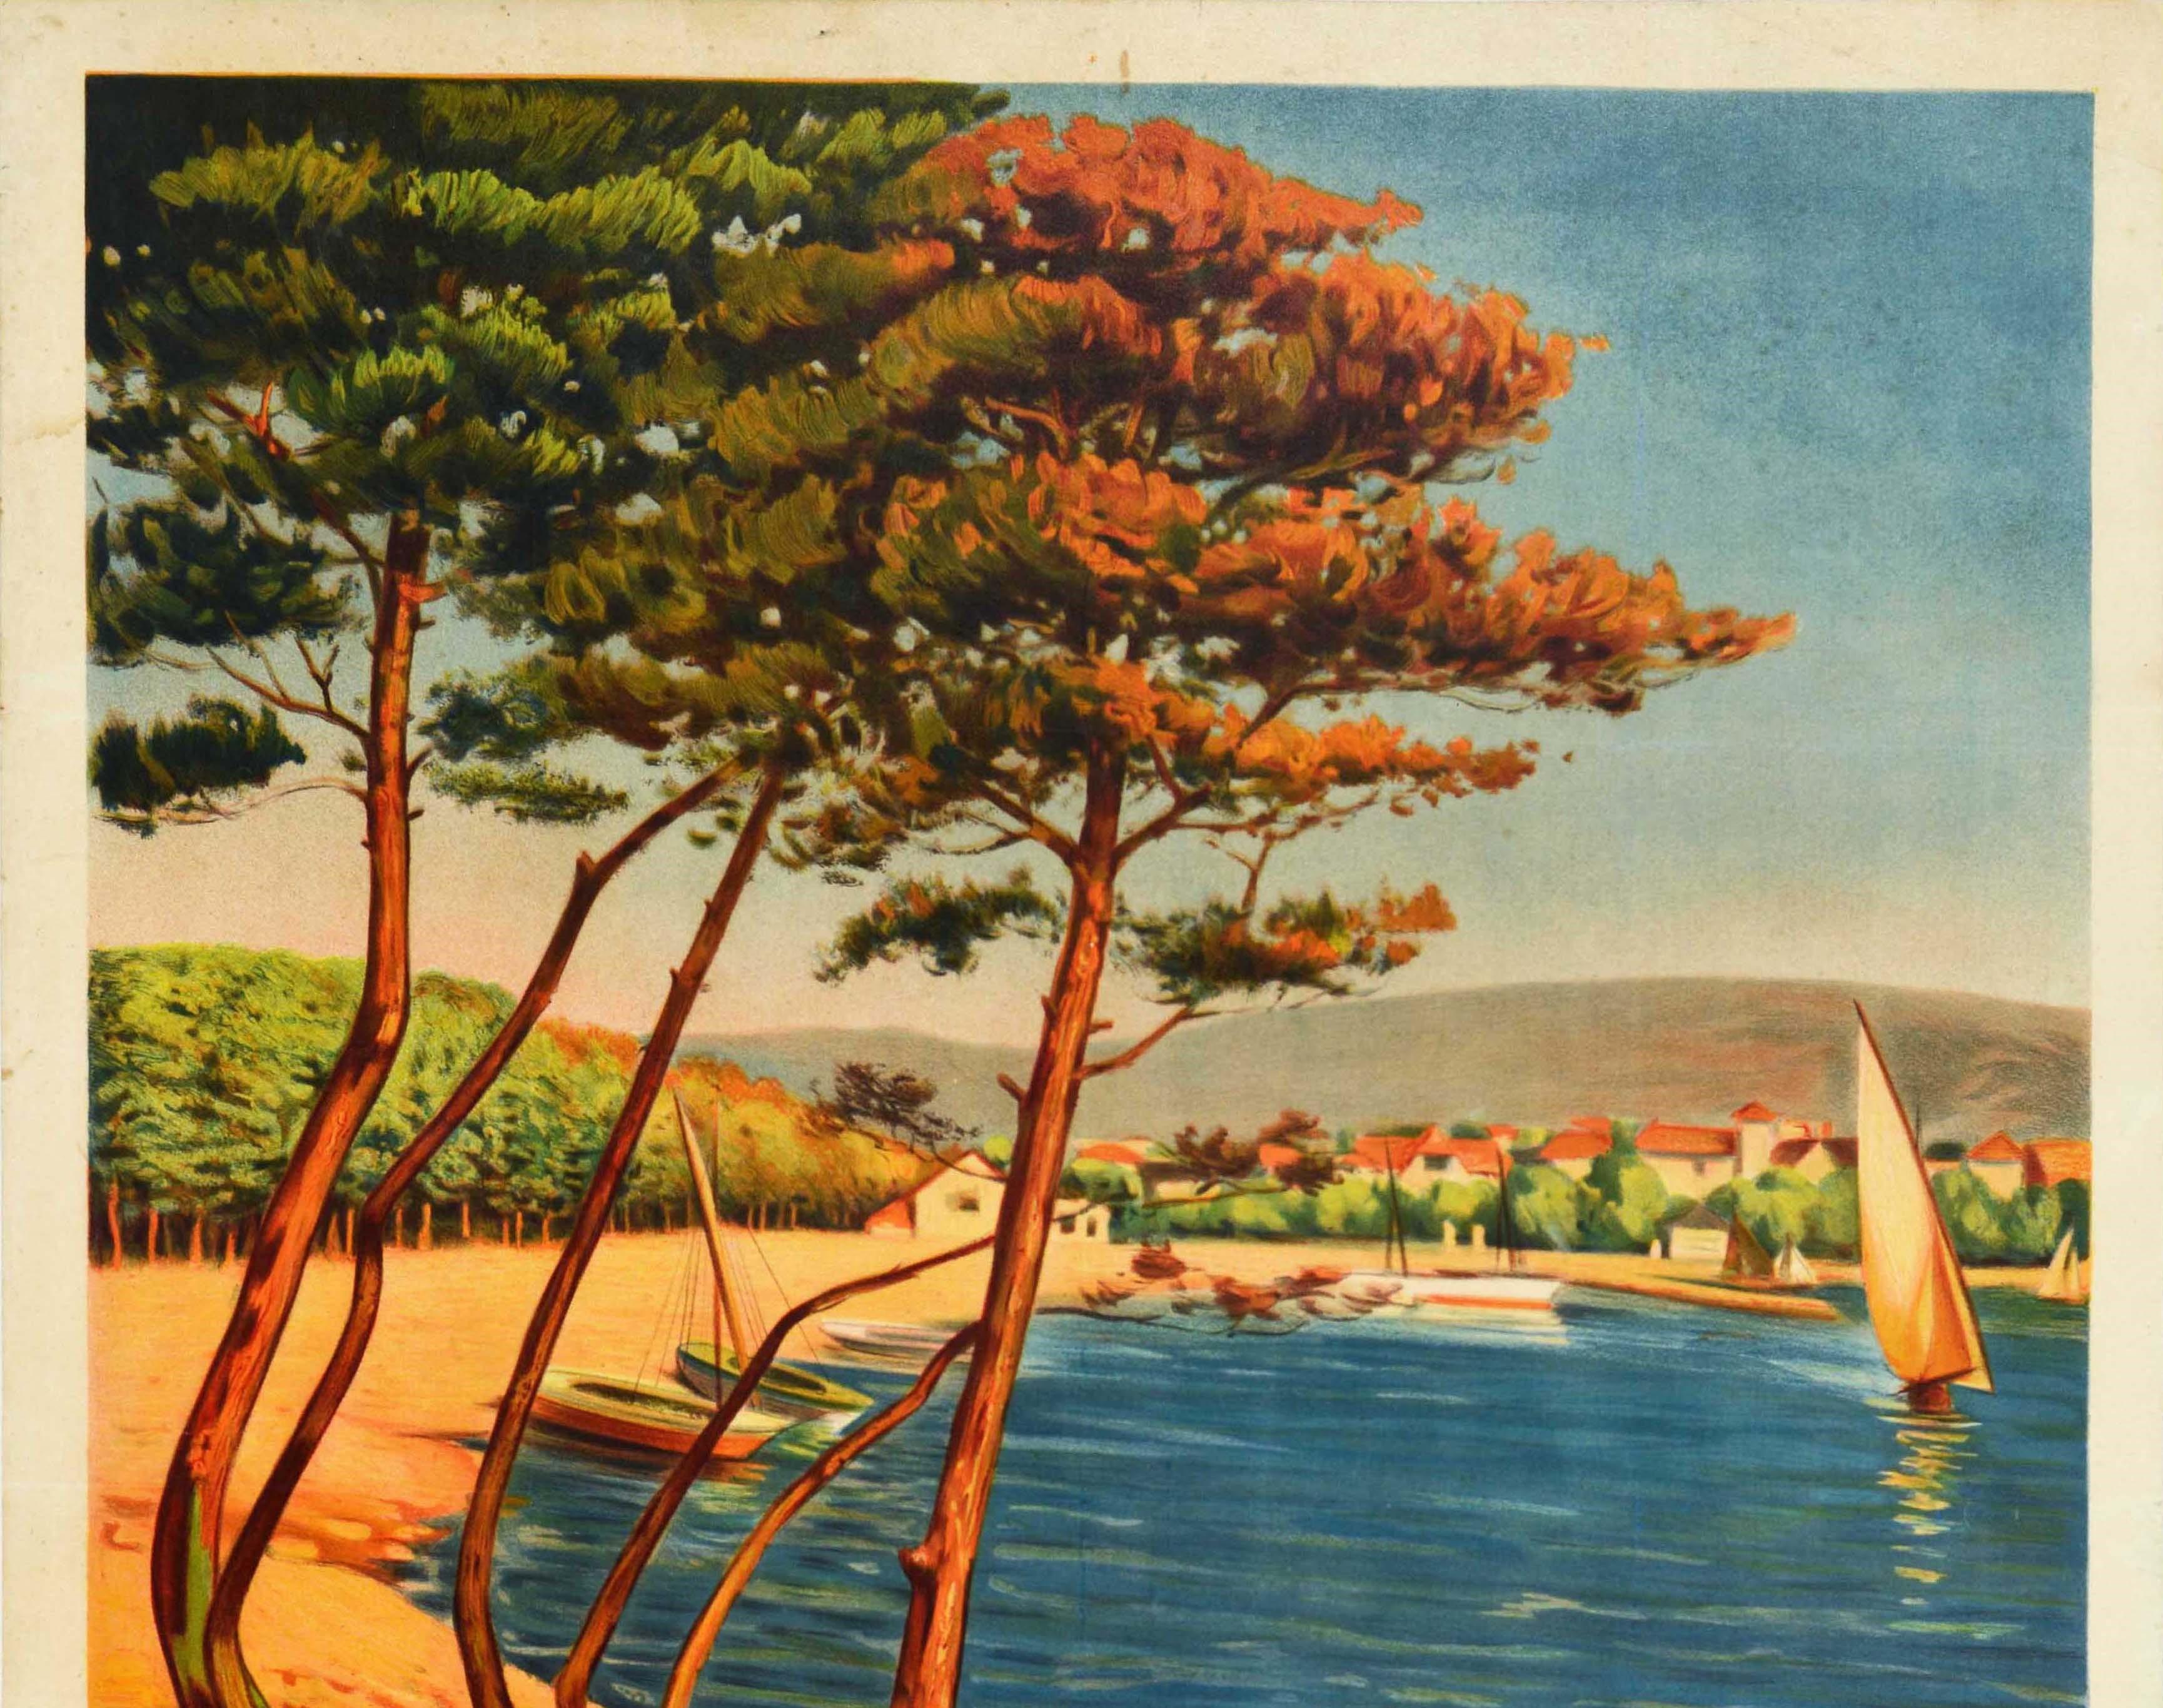 Original Antique Poster For La Plage De Carry Le Rouet Seaside Beach Sailing Art - Print by Unknown